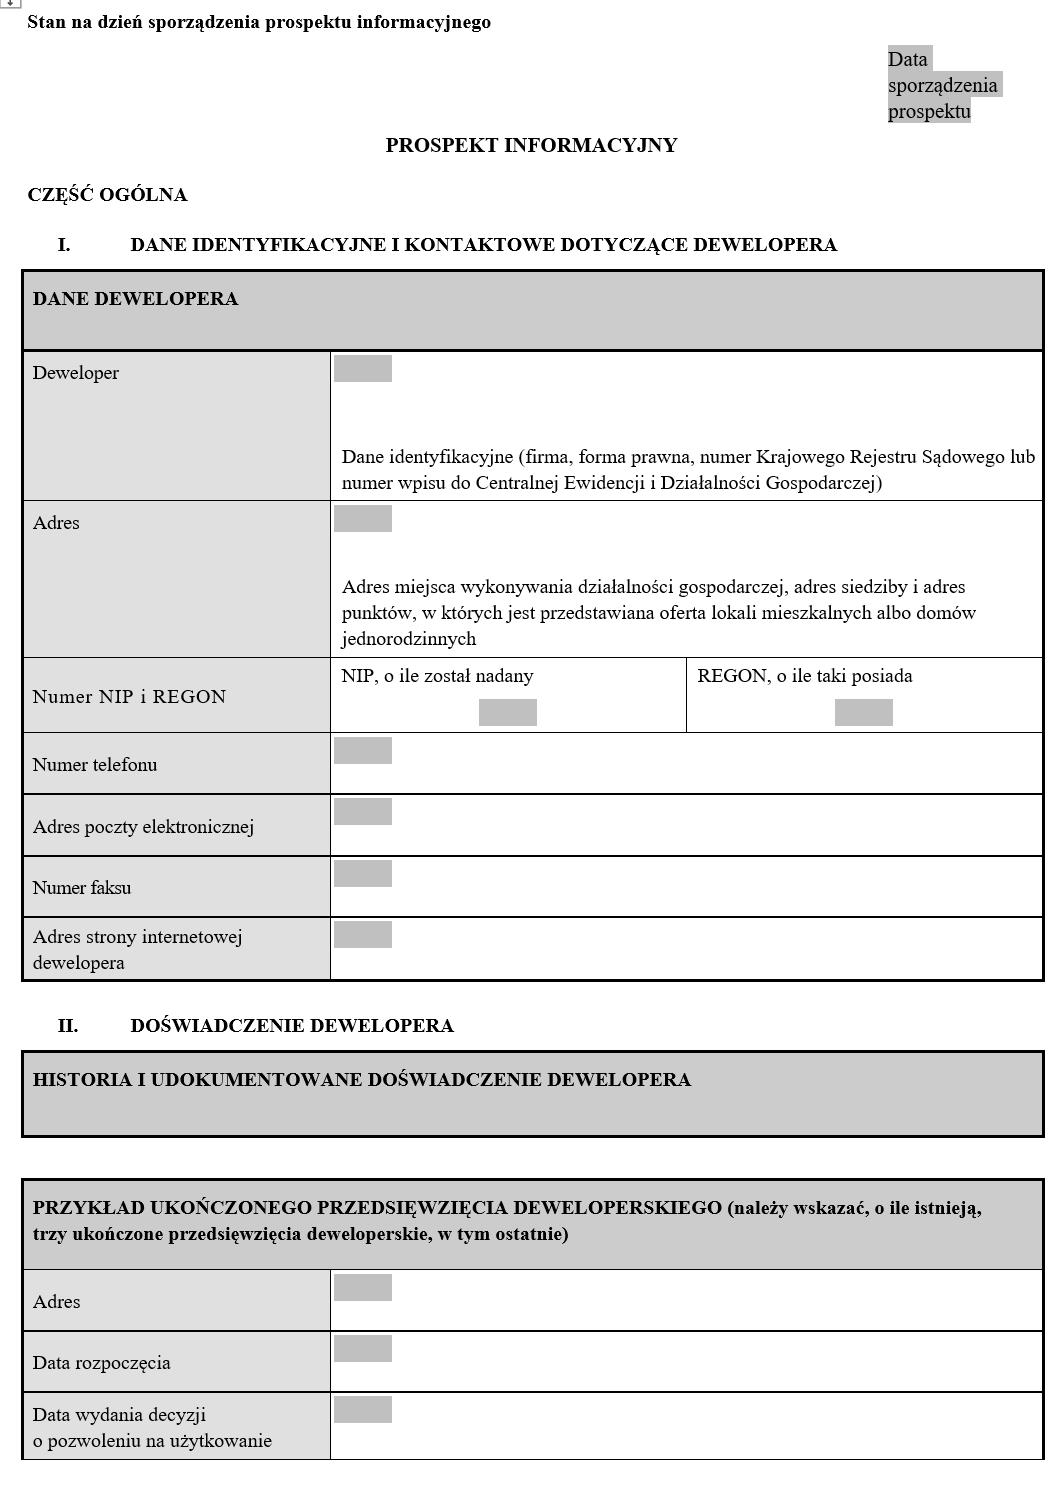 Prospekt informacyjny dewelopera - Nowa wersja formularza